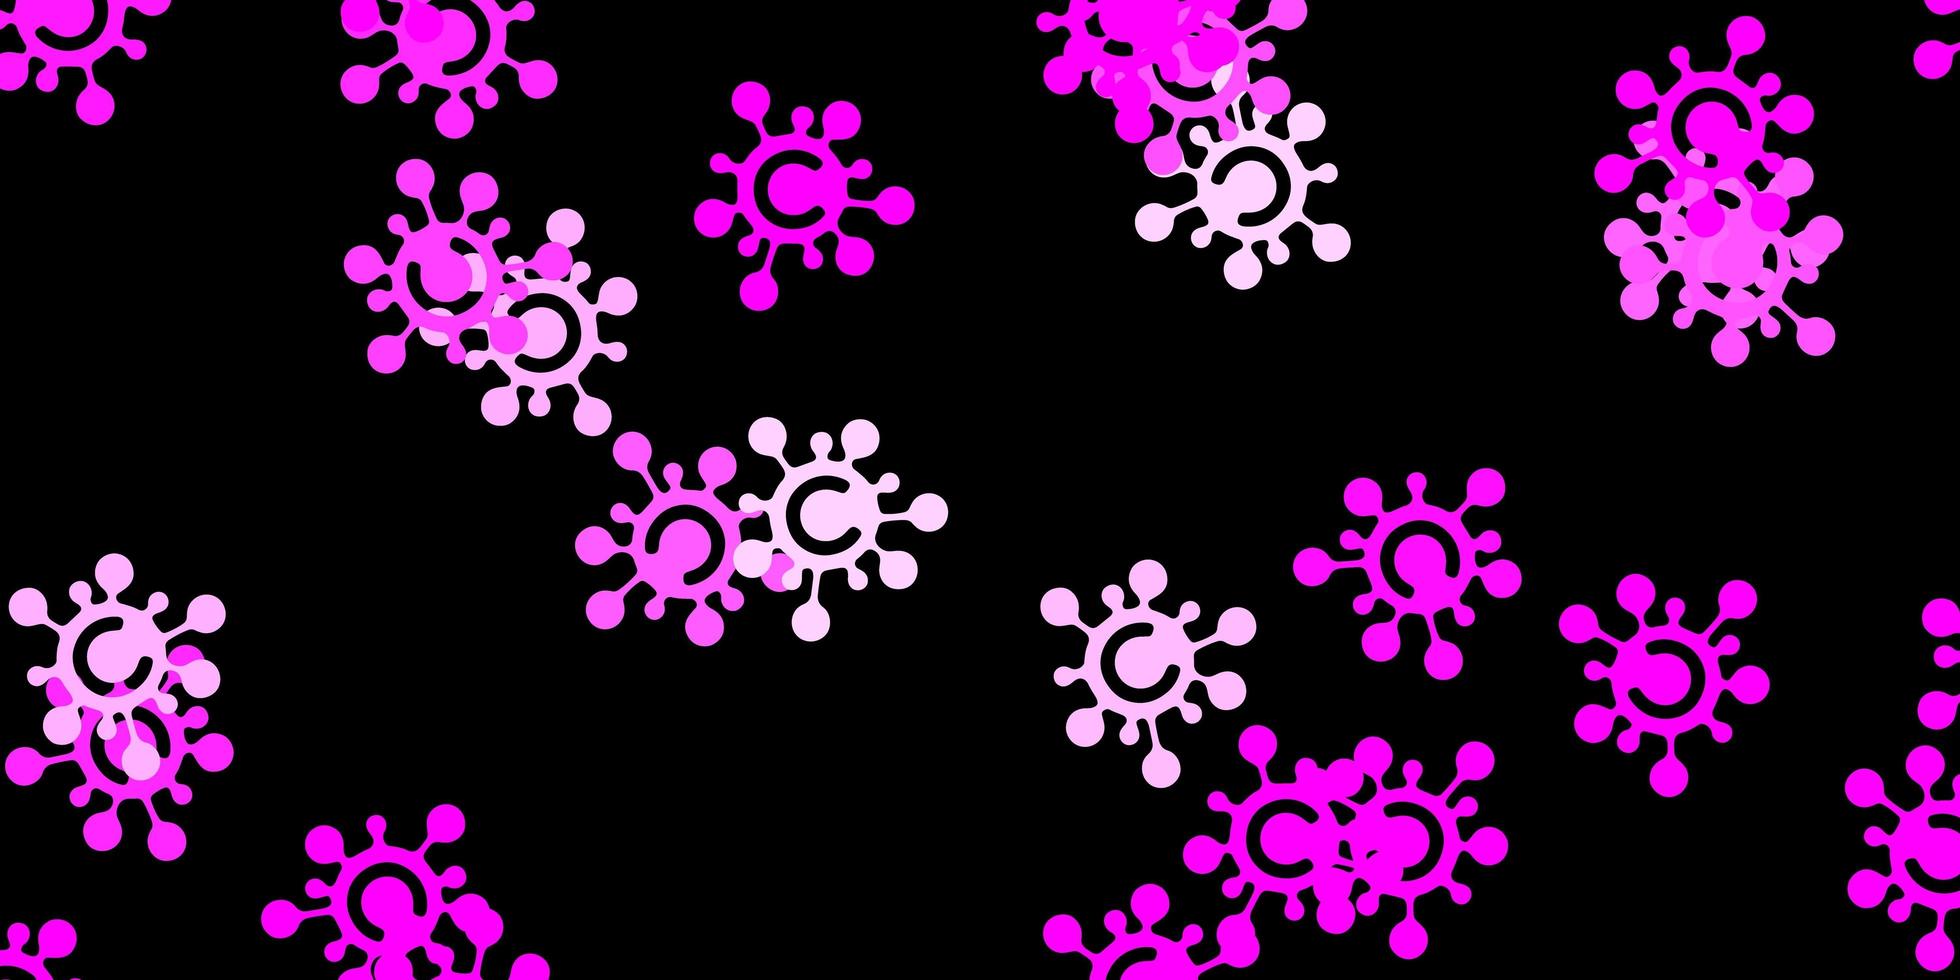 modèle vectoriel rose foncé avec des éléments de coronavirus.